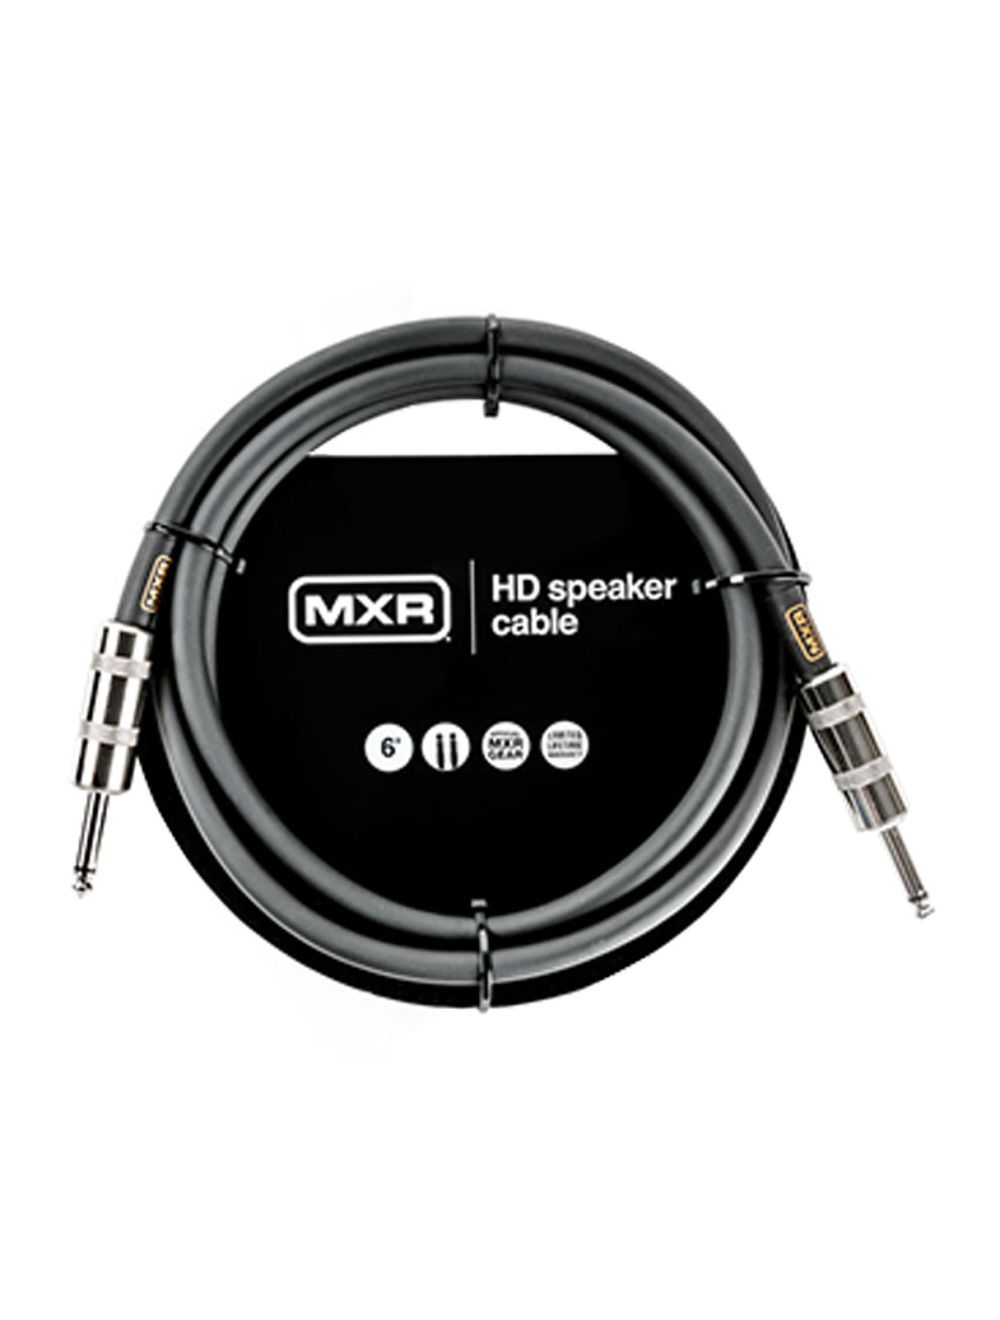 DCSTHD3 MXR Heavy Duty TS 1/4 Inch Speaker Cable 3 ft|0.9 m